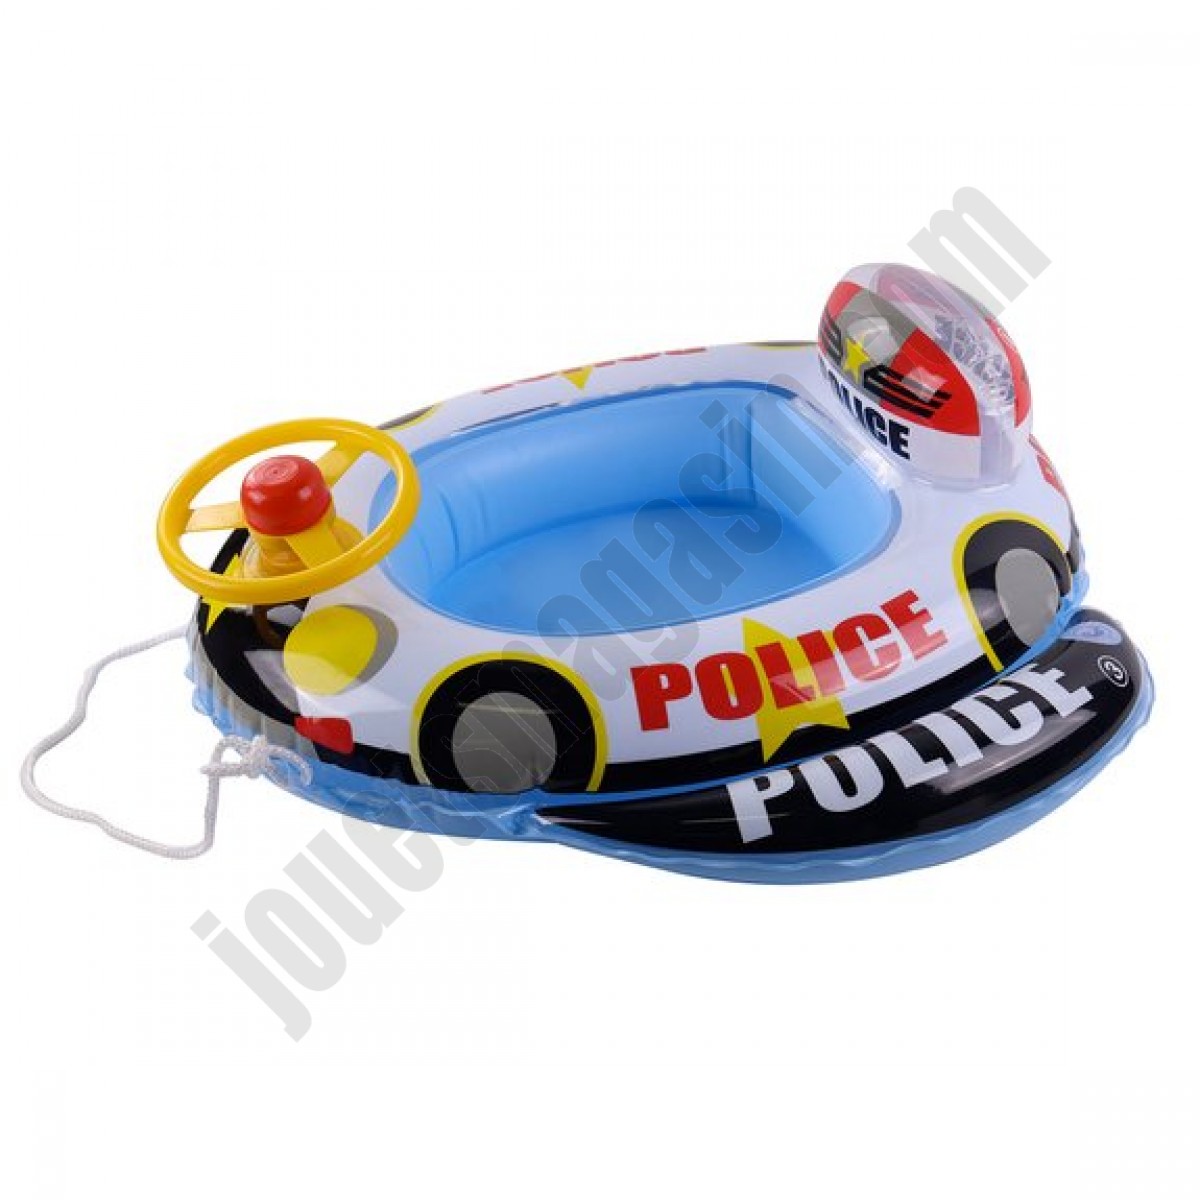 Bateau de police gonflable avec volant 75 x 70 cm En promotion - Bateau de police gonflable avec volant 75 x 70 cm En promotion